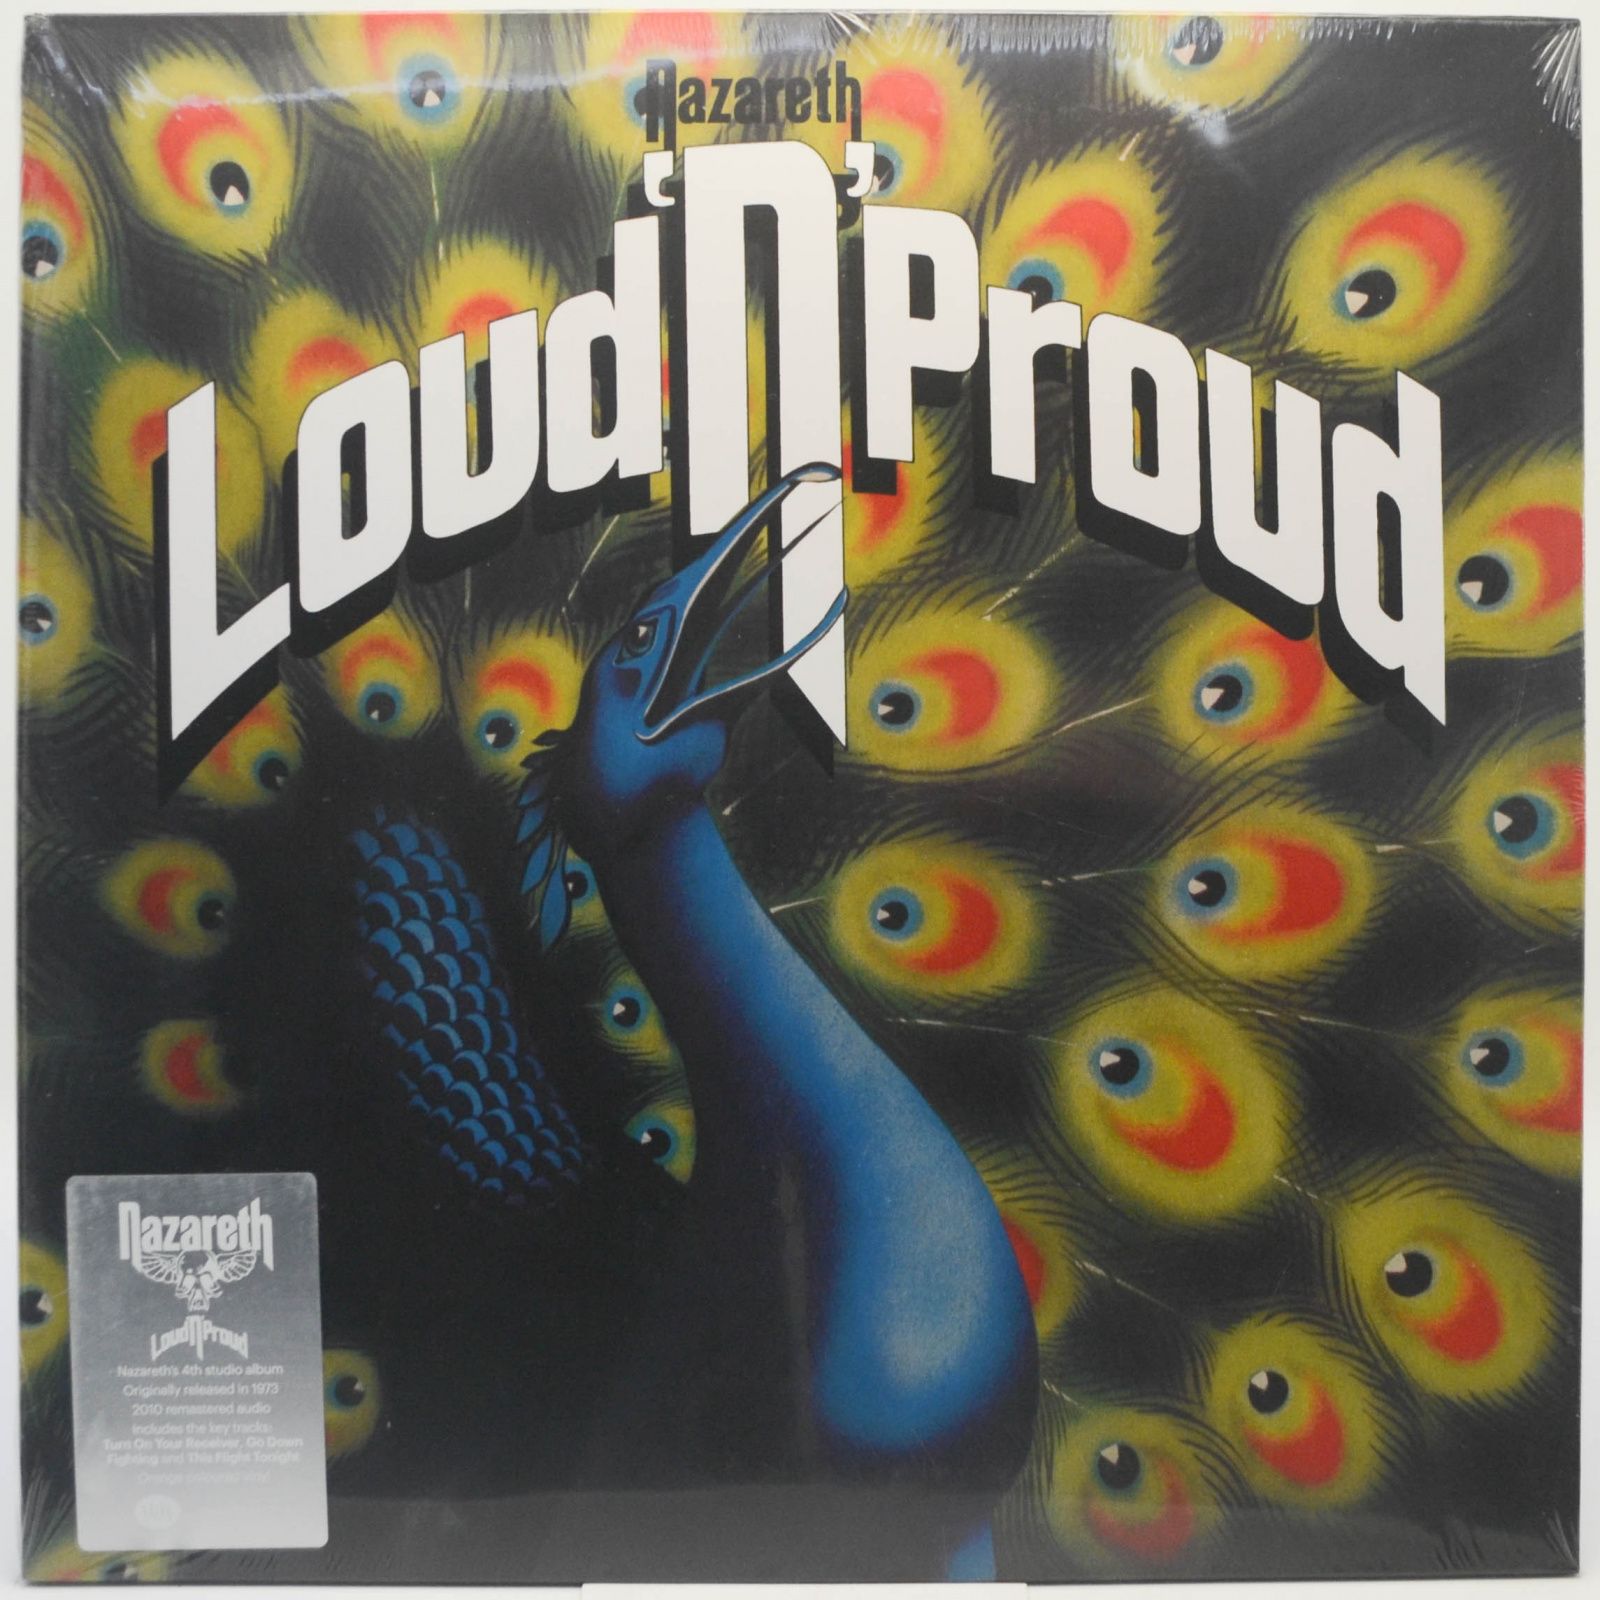 Loud'N'Proud, 1973